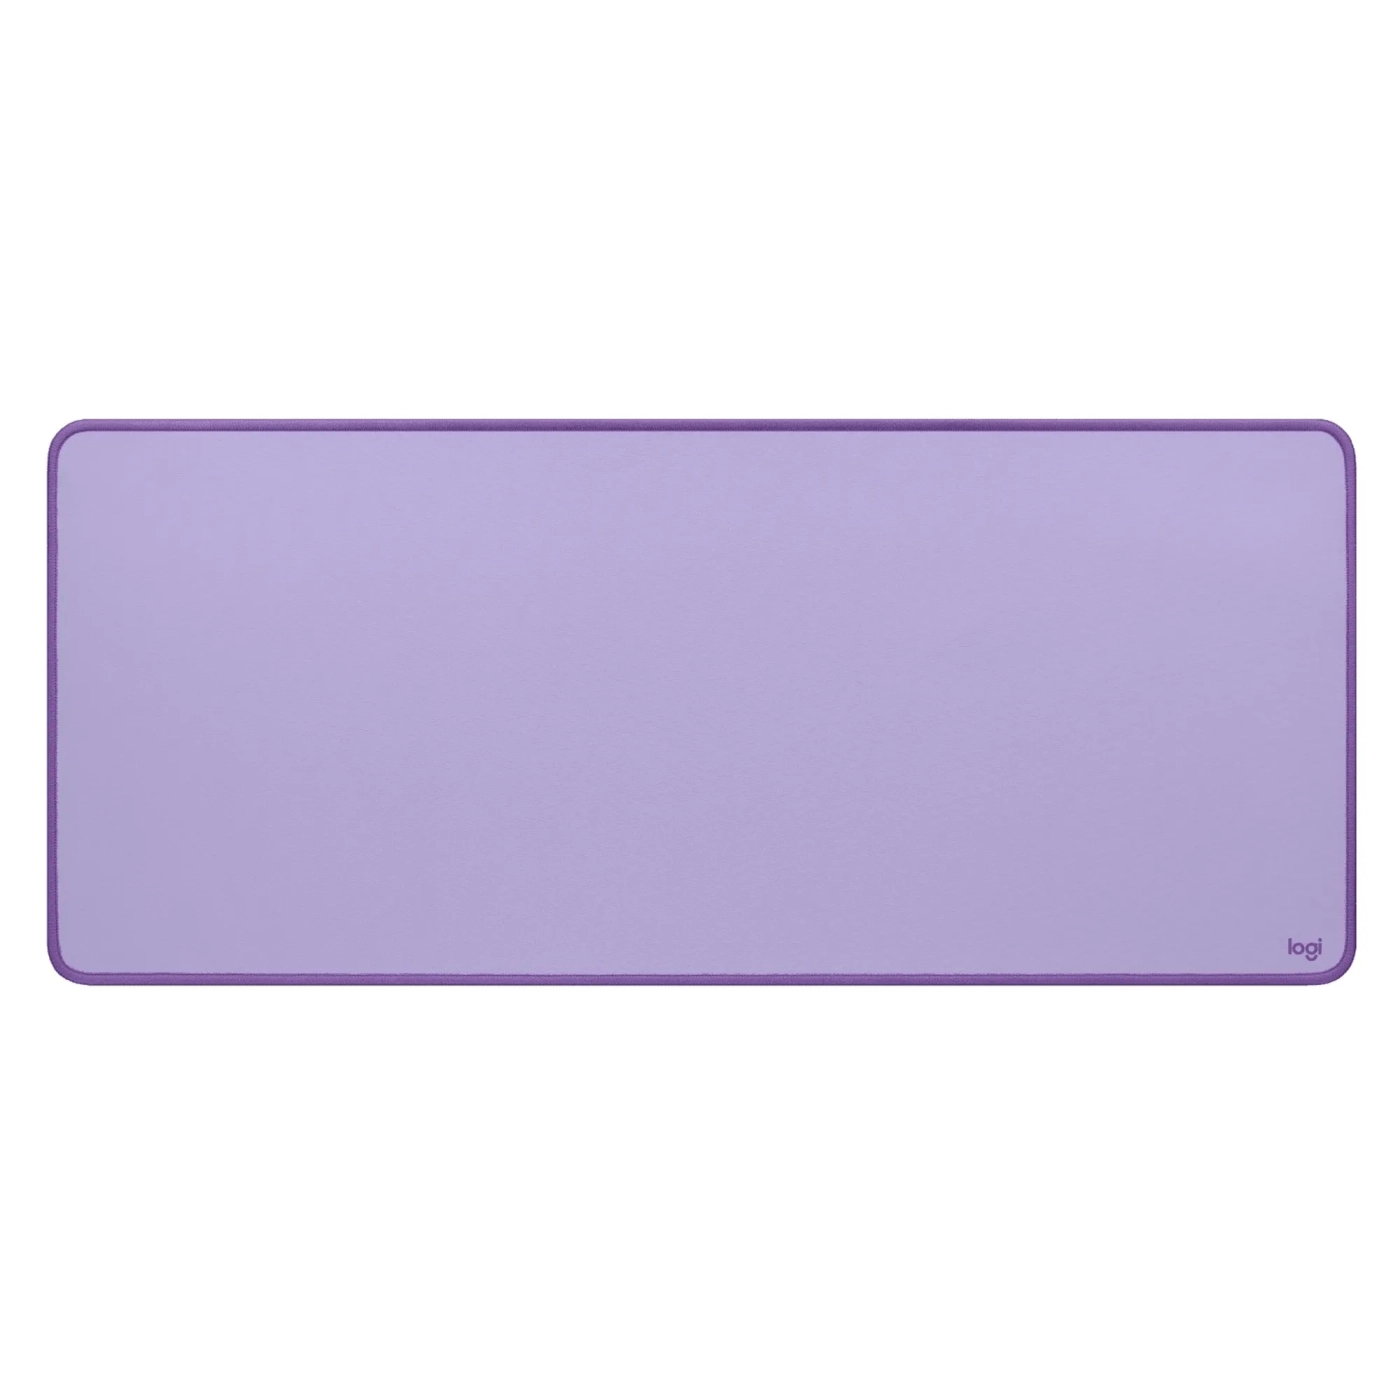 Купить Игровая поверхность Logitech Desk Mat Studio Series Lavender (956-000054) - фото 1